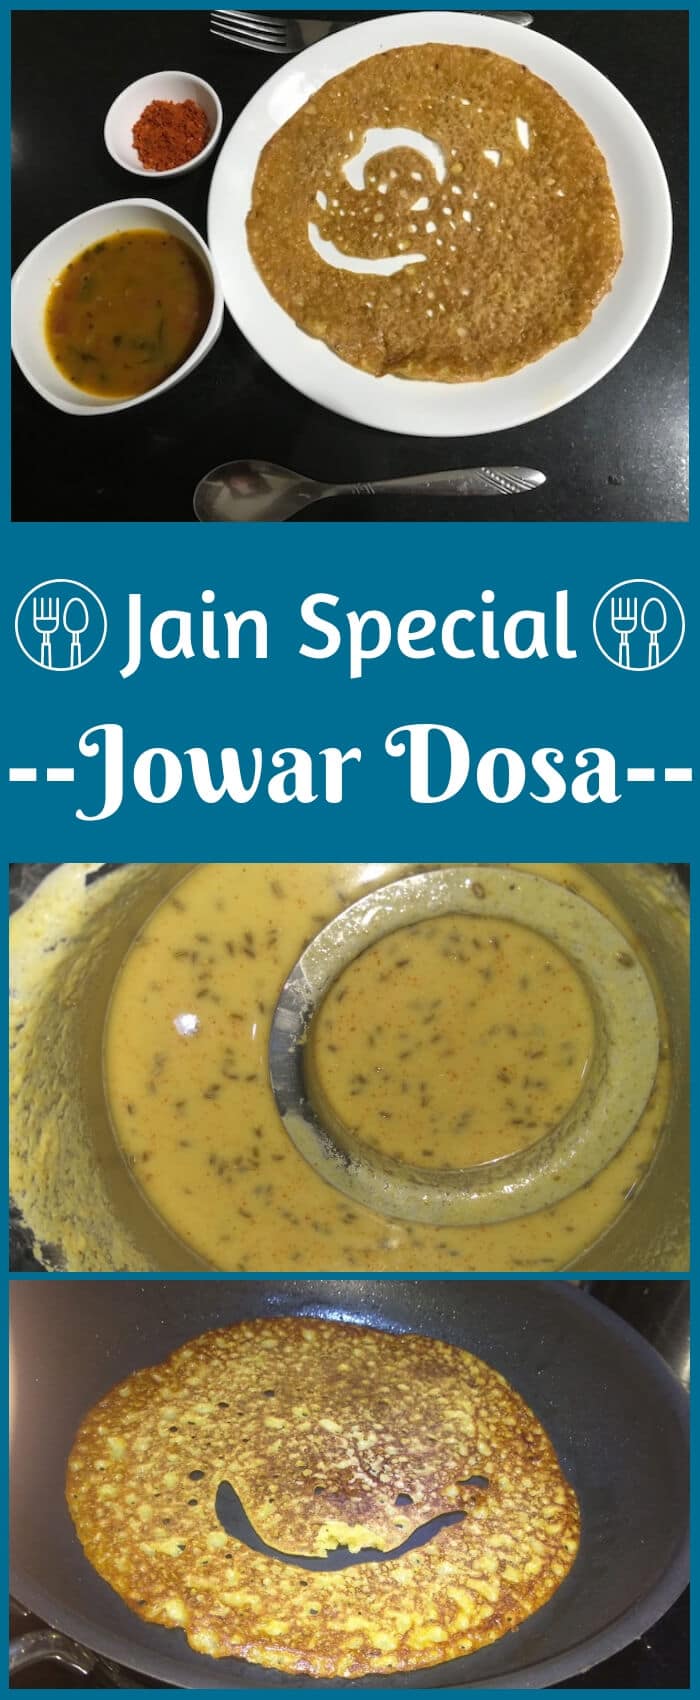 Jain Jowar Dosa